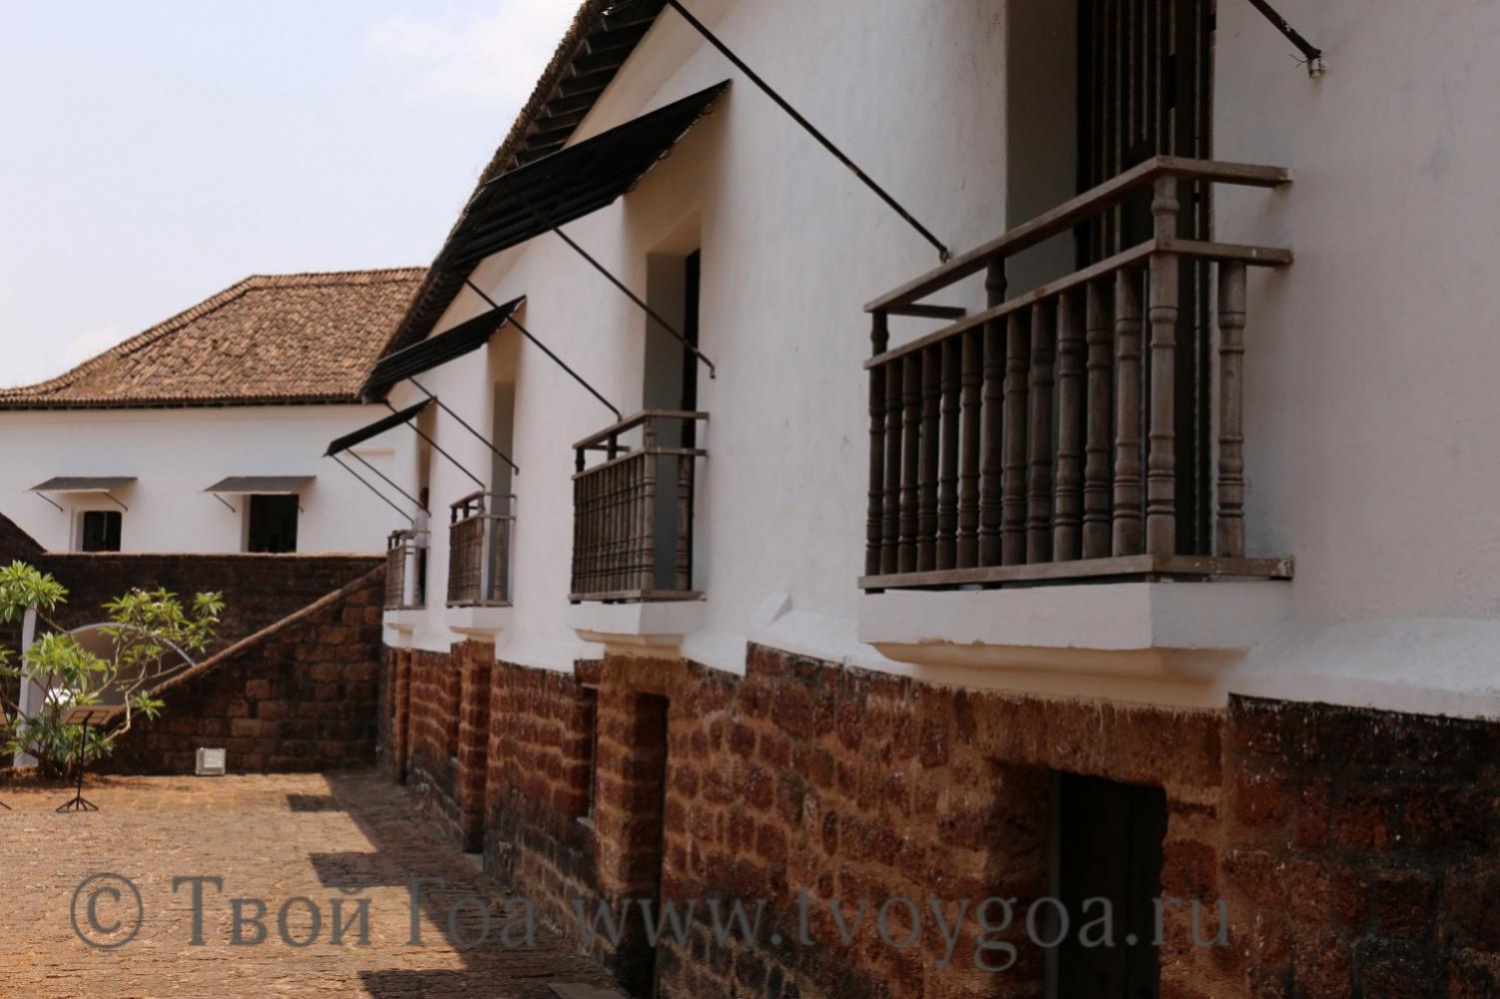 За 500 лет форт служил резиденцией для наместников и высокопоставленных лиц